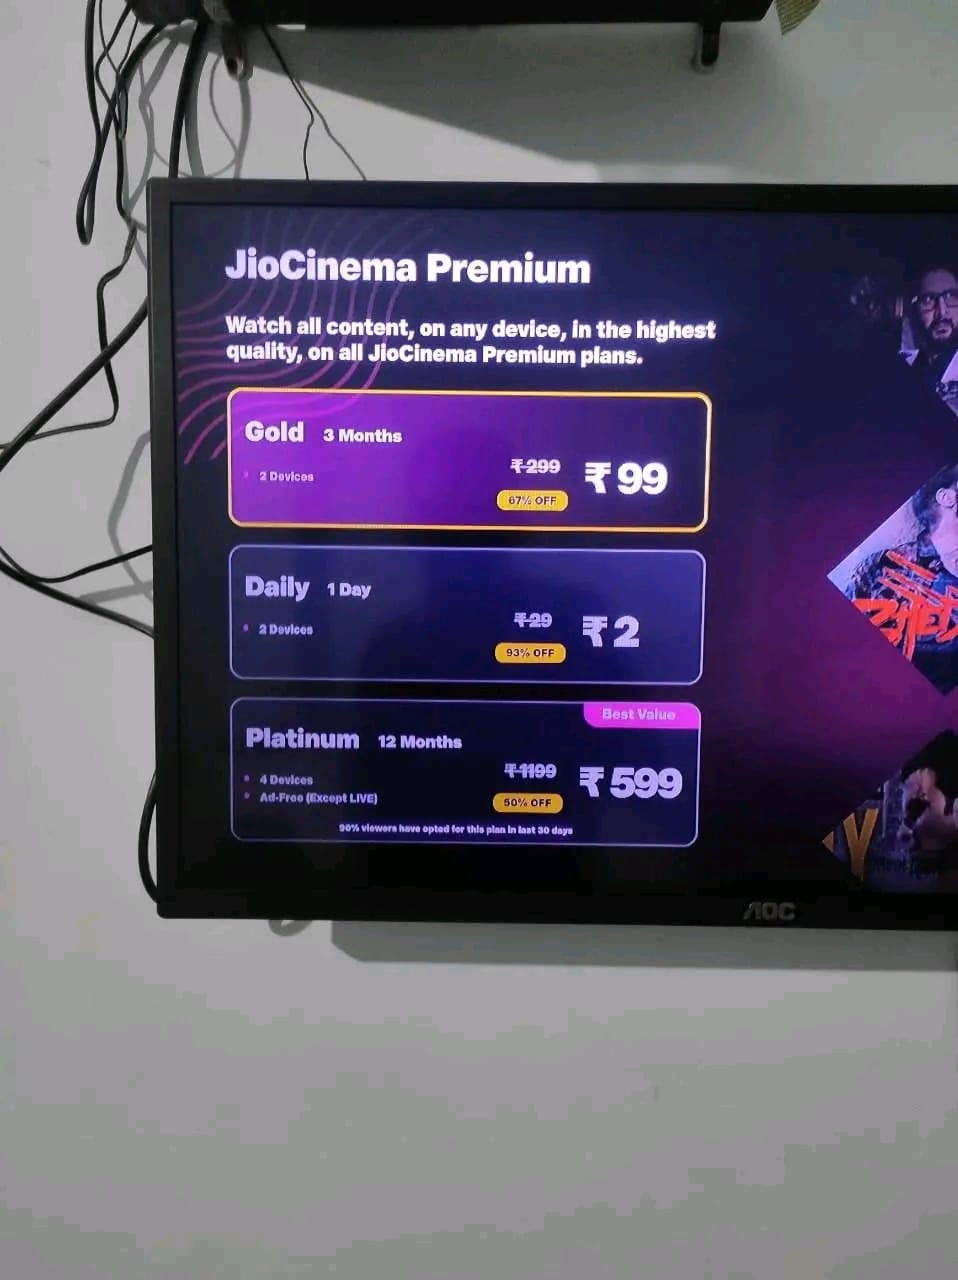 JioCinnema Premium Subscription Plans Leaked